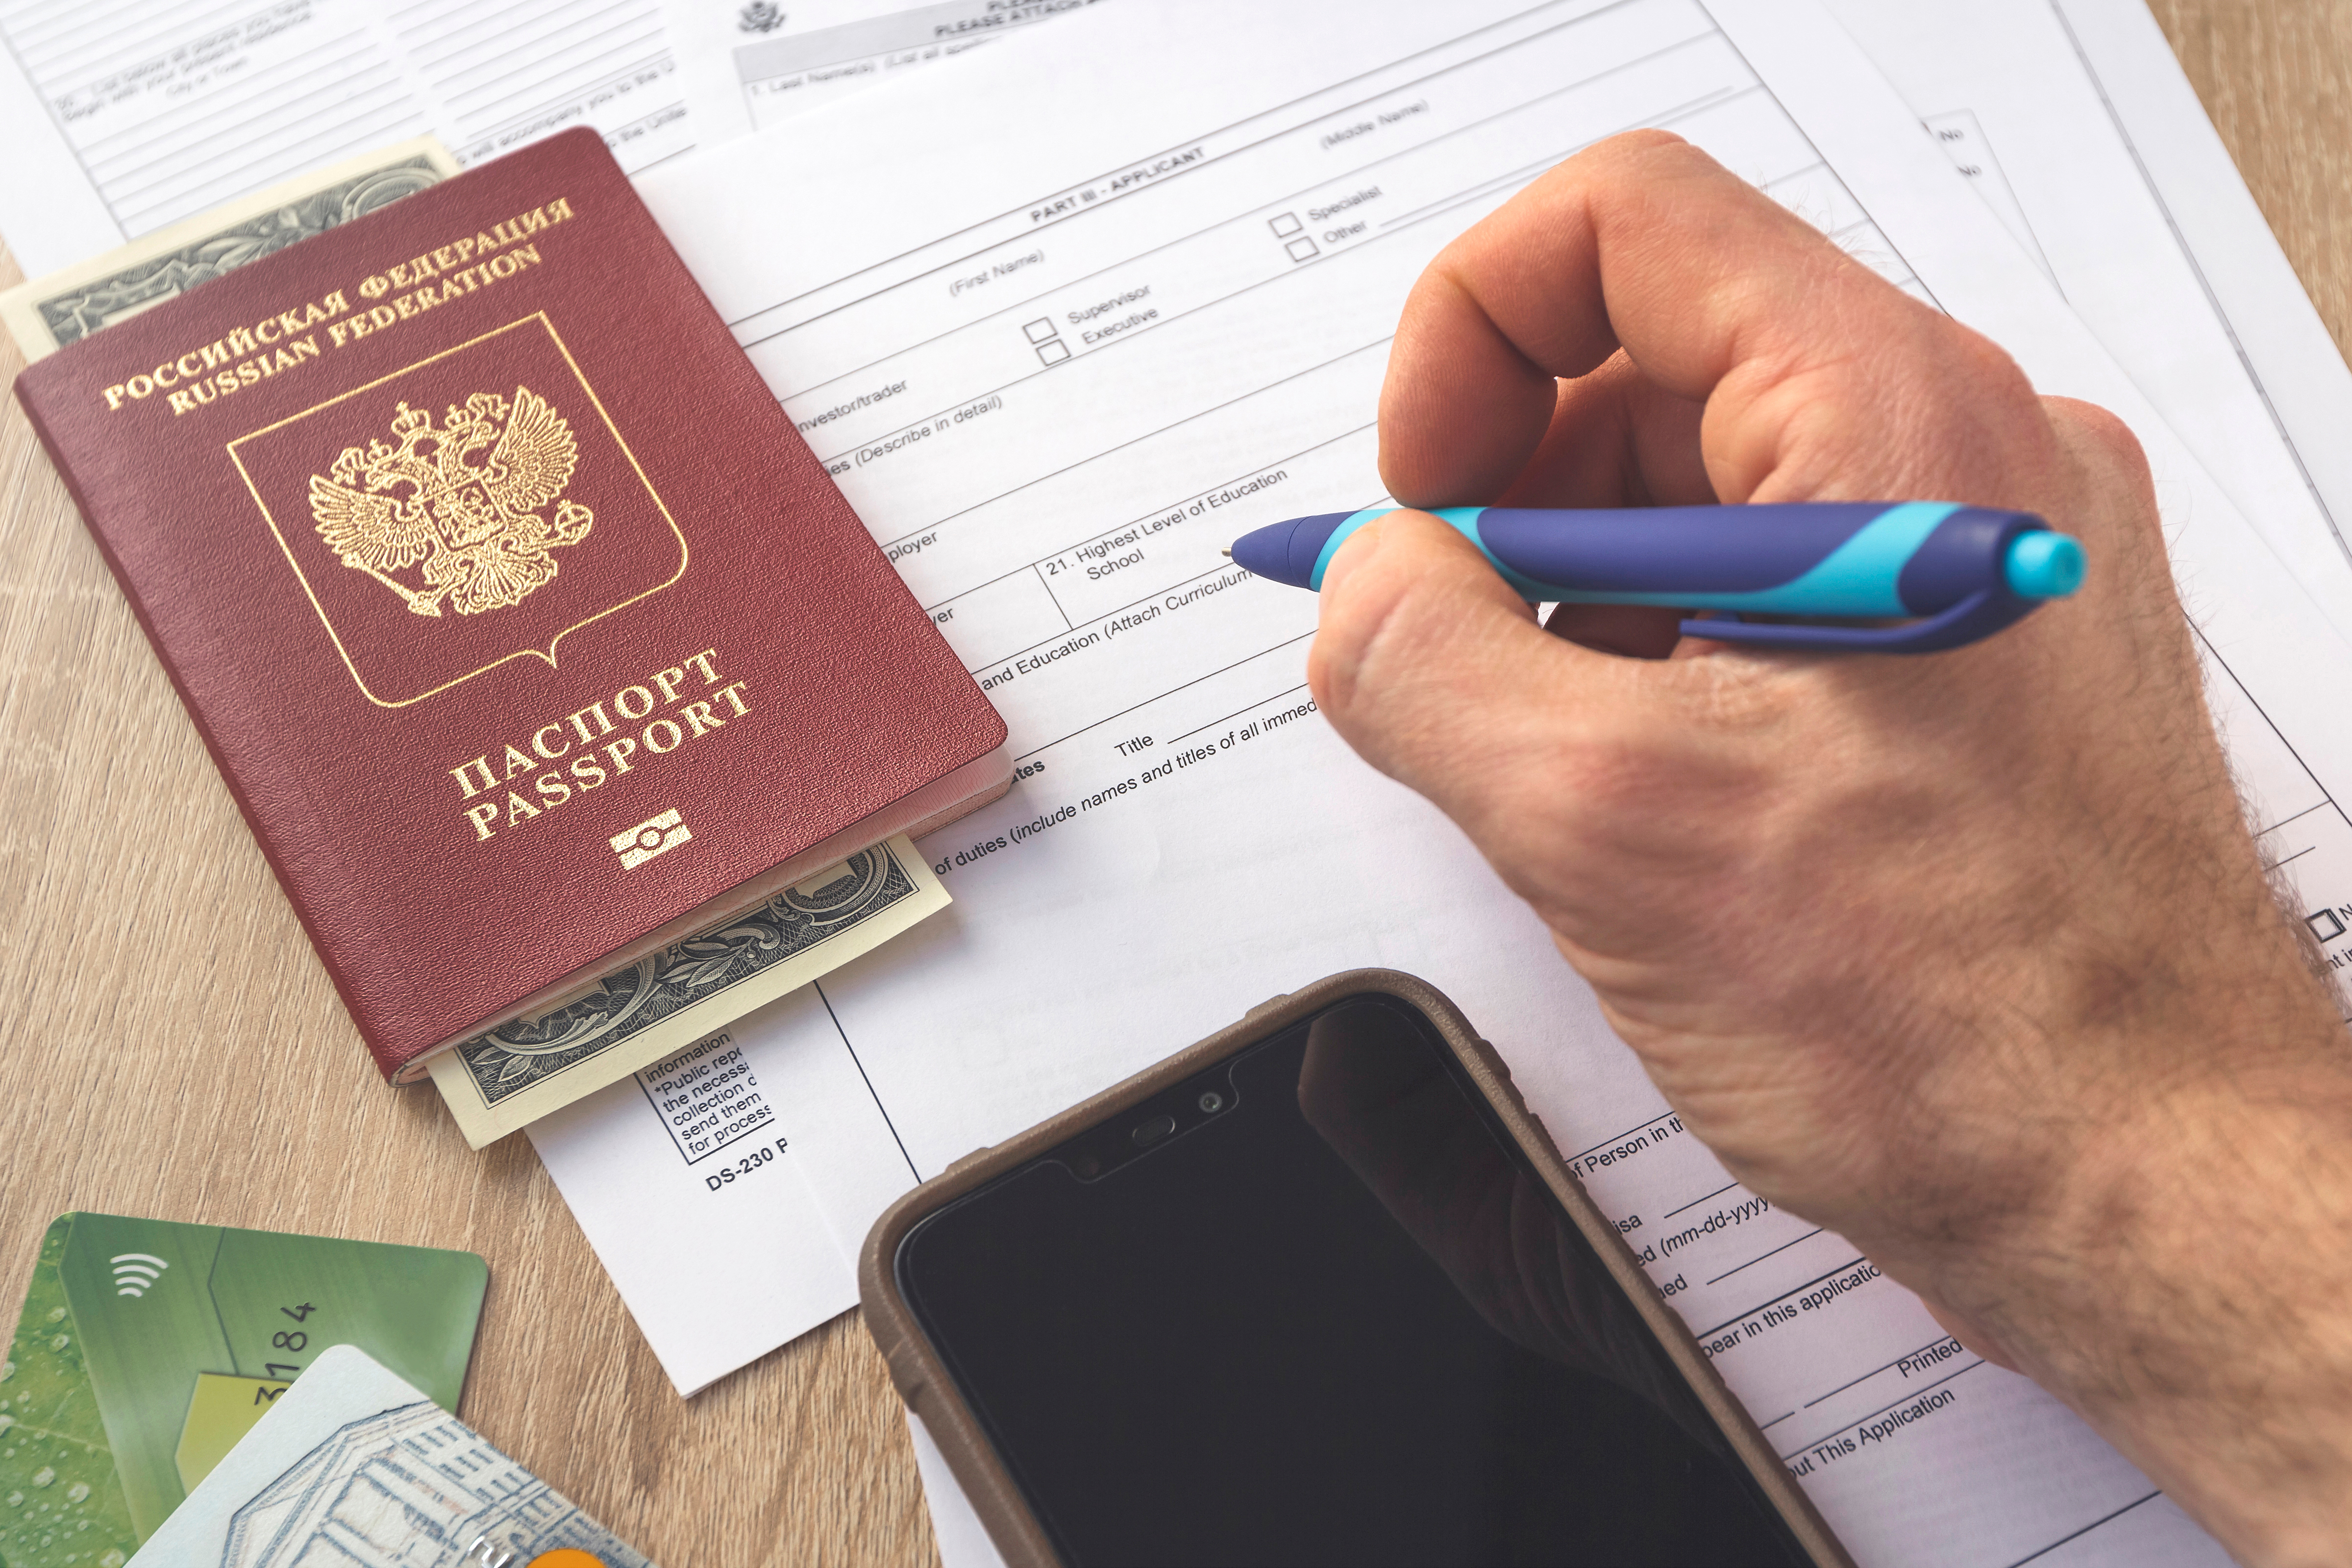 Дума приняла закон об изъятии загранпаспортов на границе